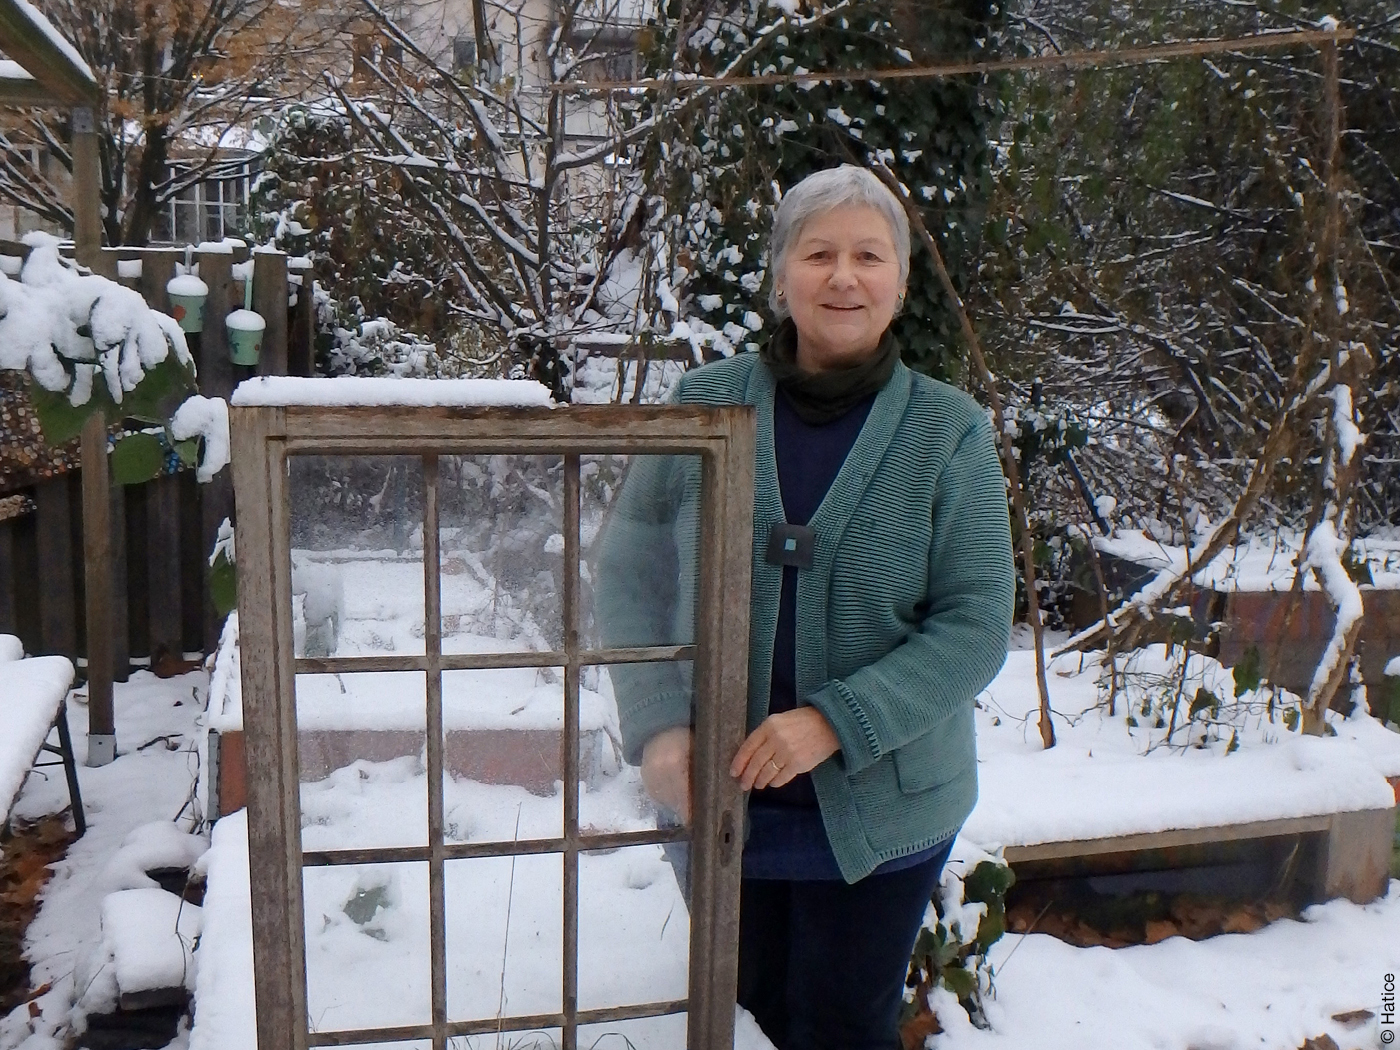 Architektin Ute Dechantsreiter mit einem alten Fenster in einem verschneiten Garten.